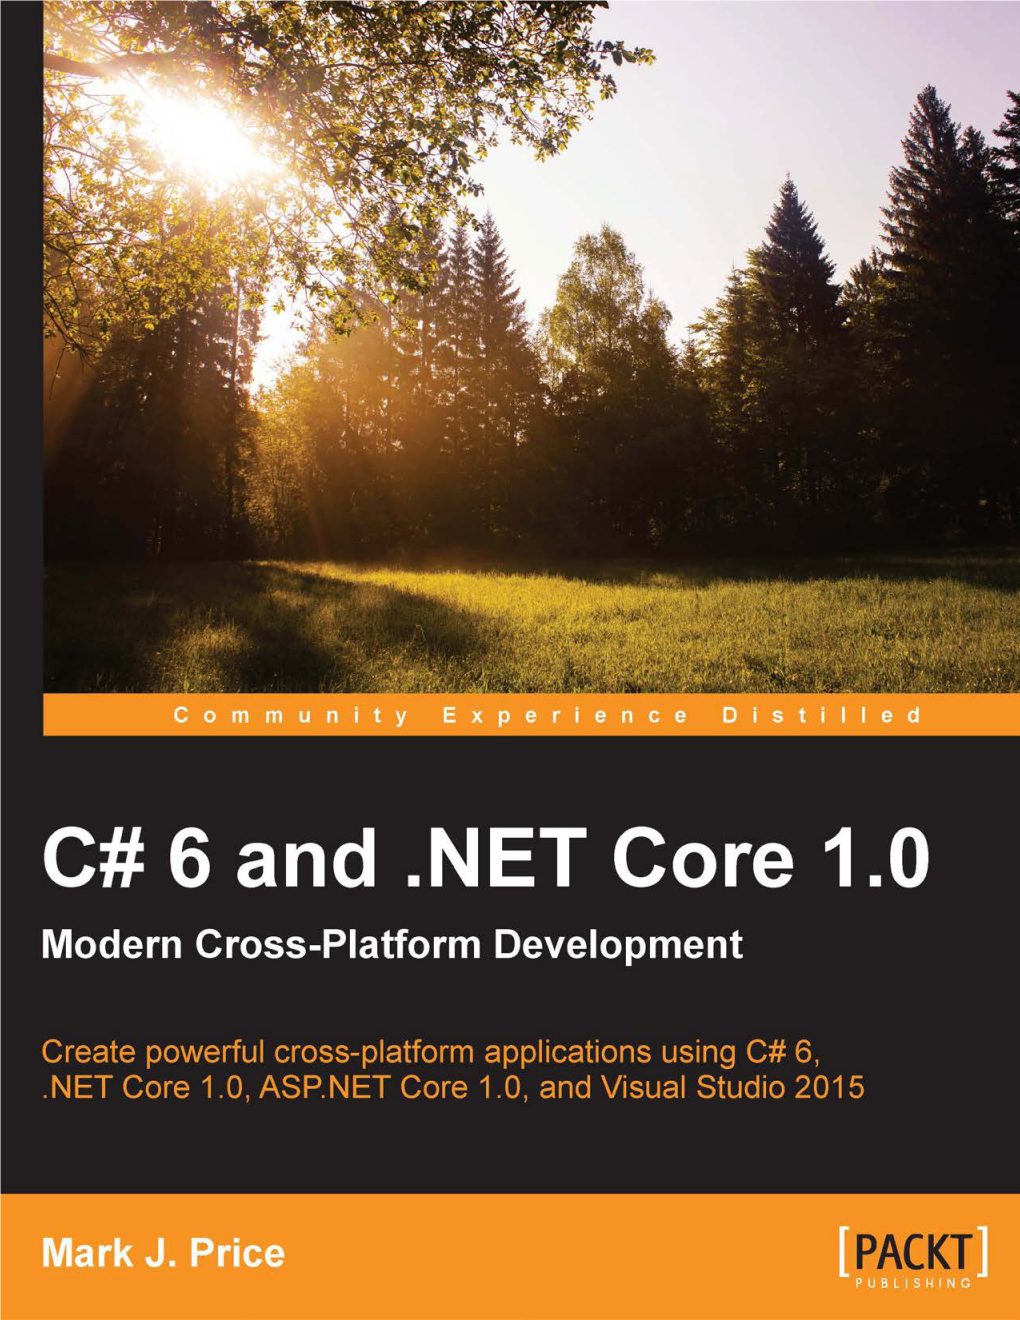 NET Core 1.0 Modern Cross-Platform Development